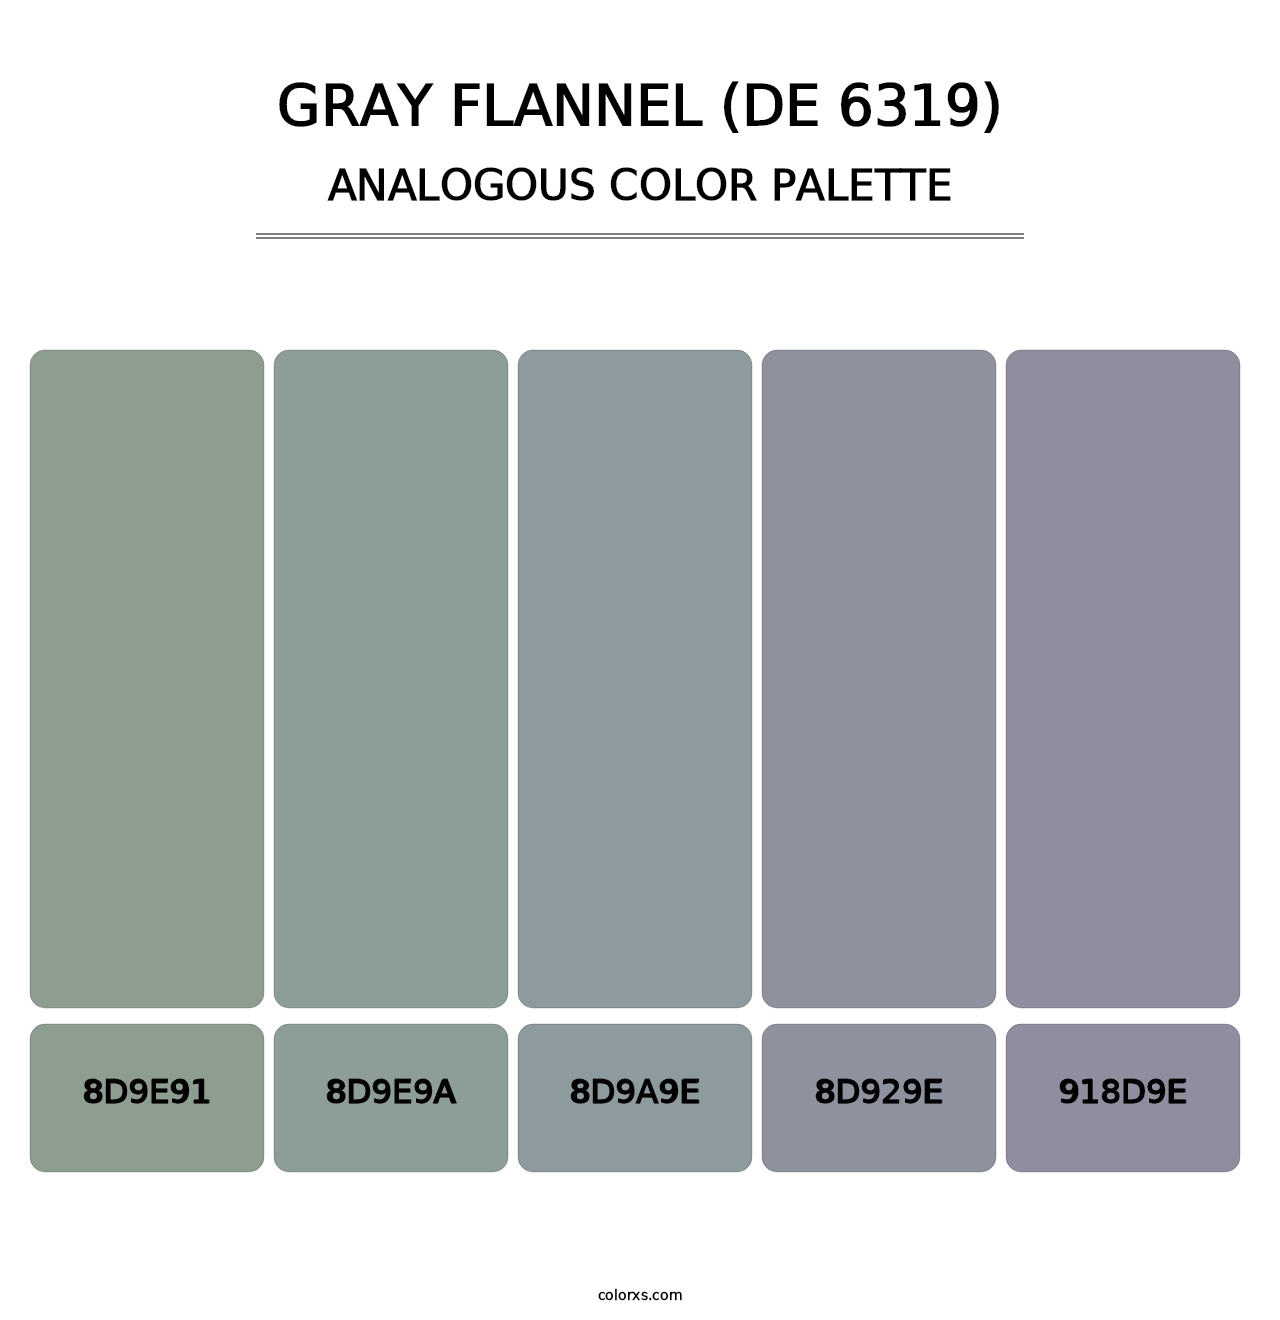 Gray Flannel (DE 6319) - Analogous Color Palette